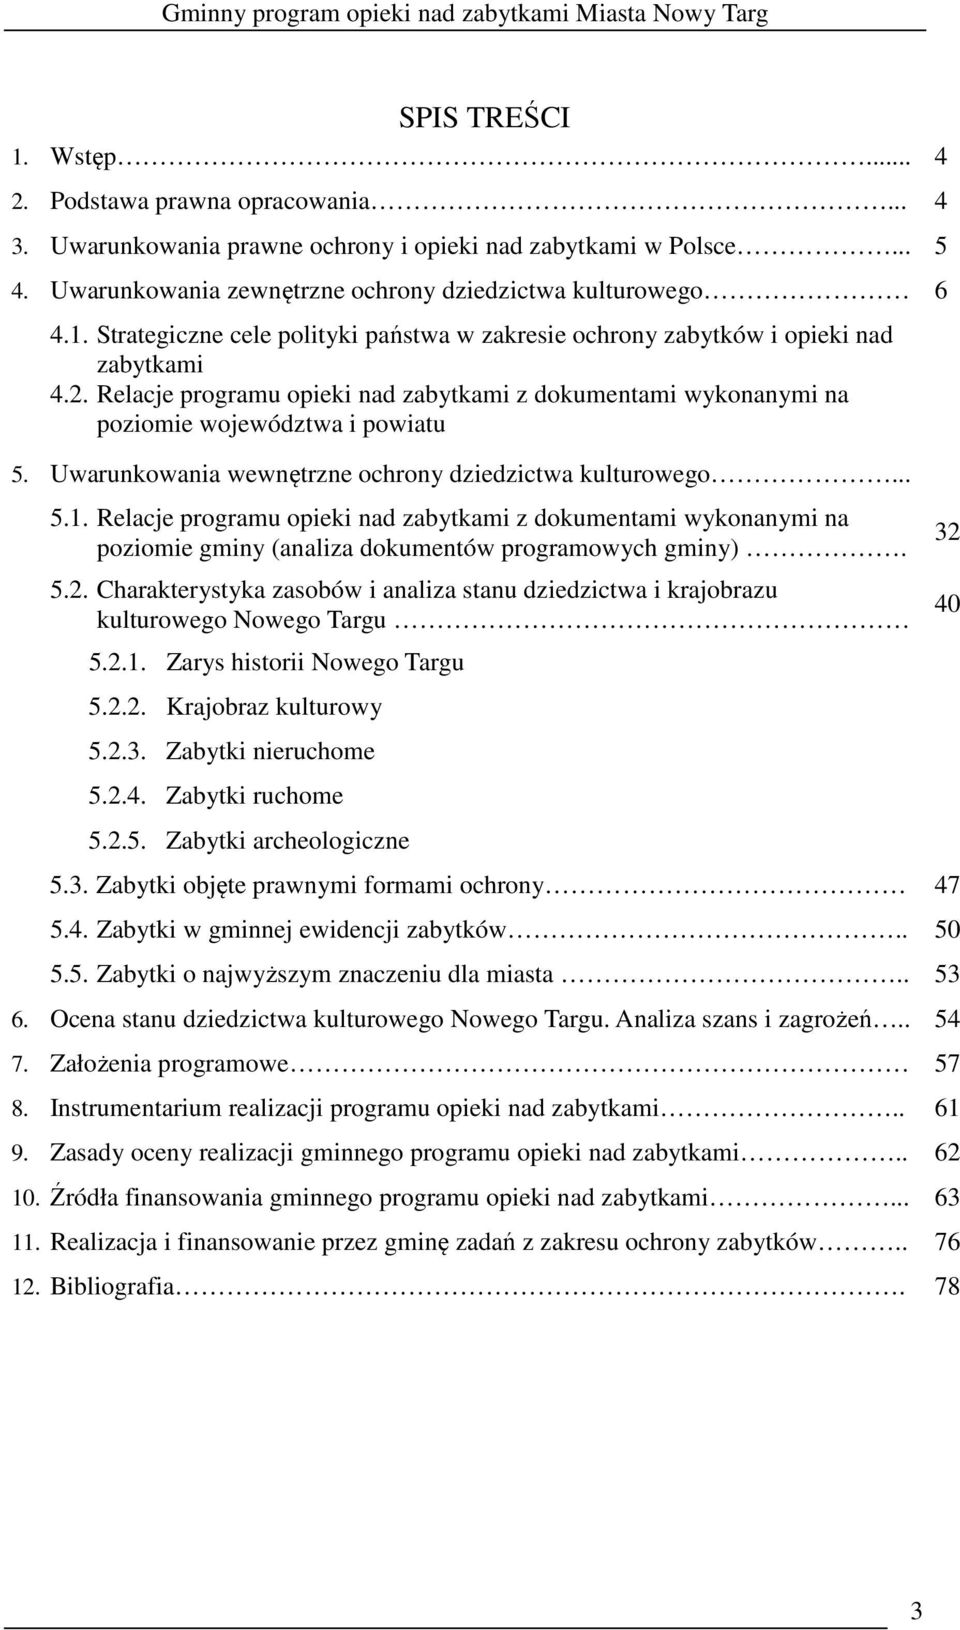 Relacje programu opieki nad zabytkami z dokumentami wykonanymi na poziomie gminy (analiza dokumentów programowych gminy). 5.2.